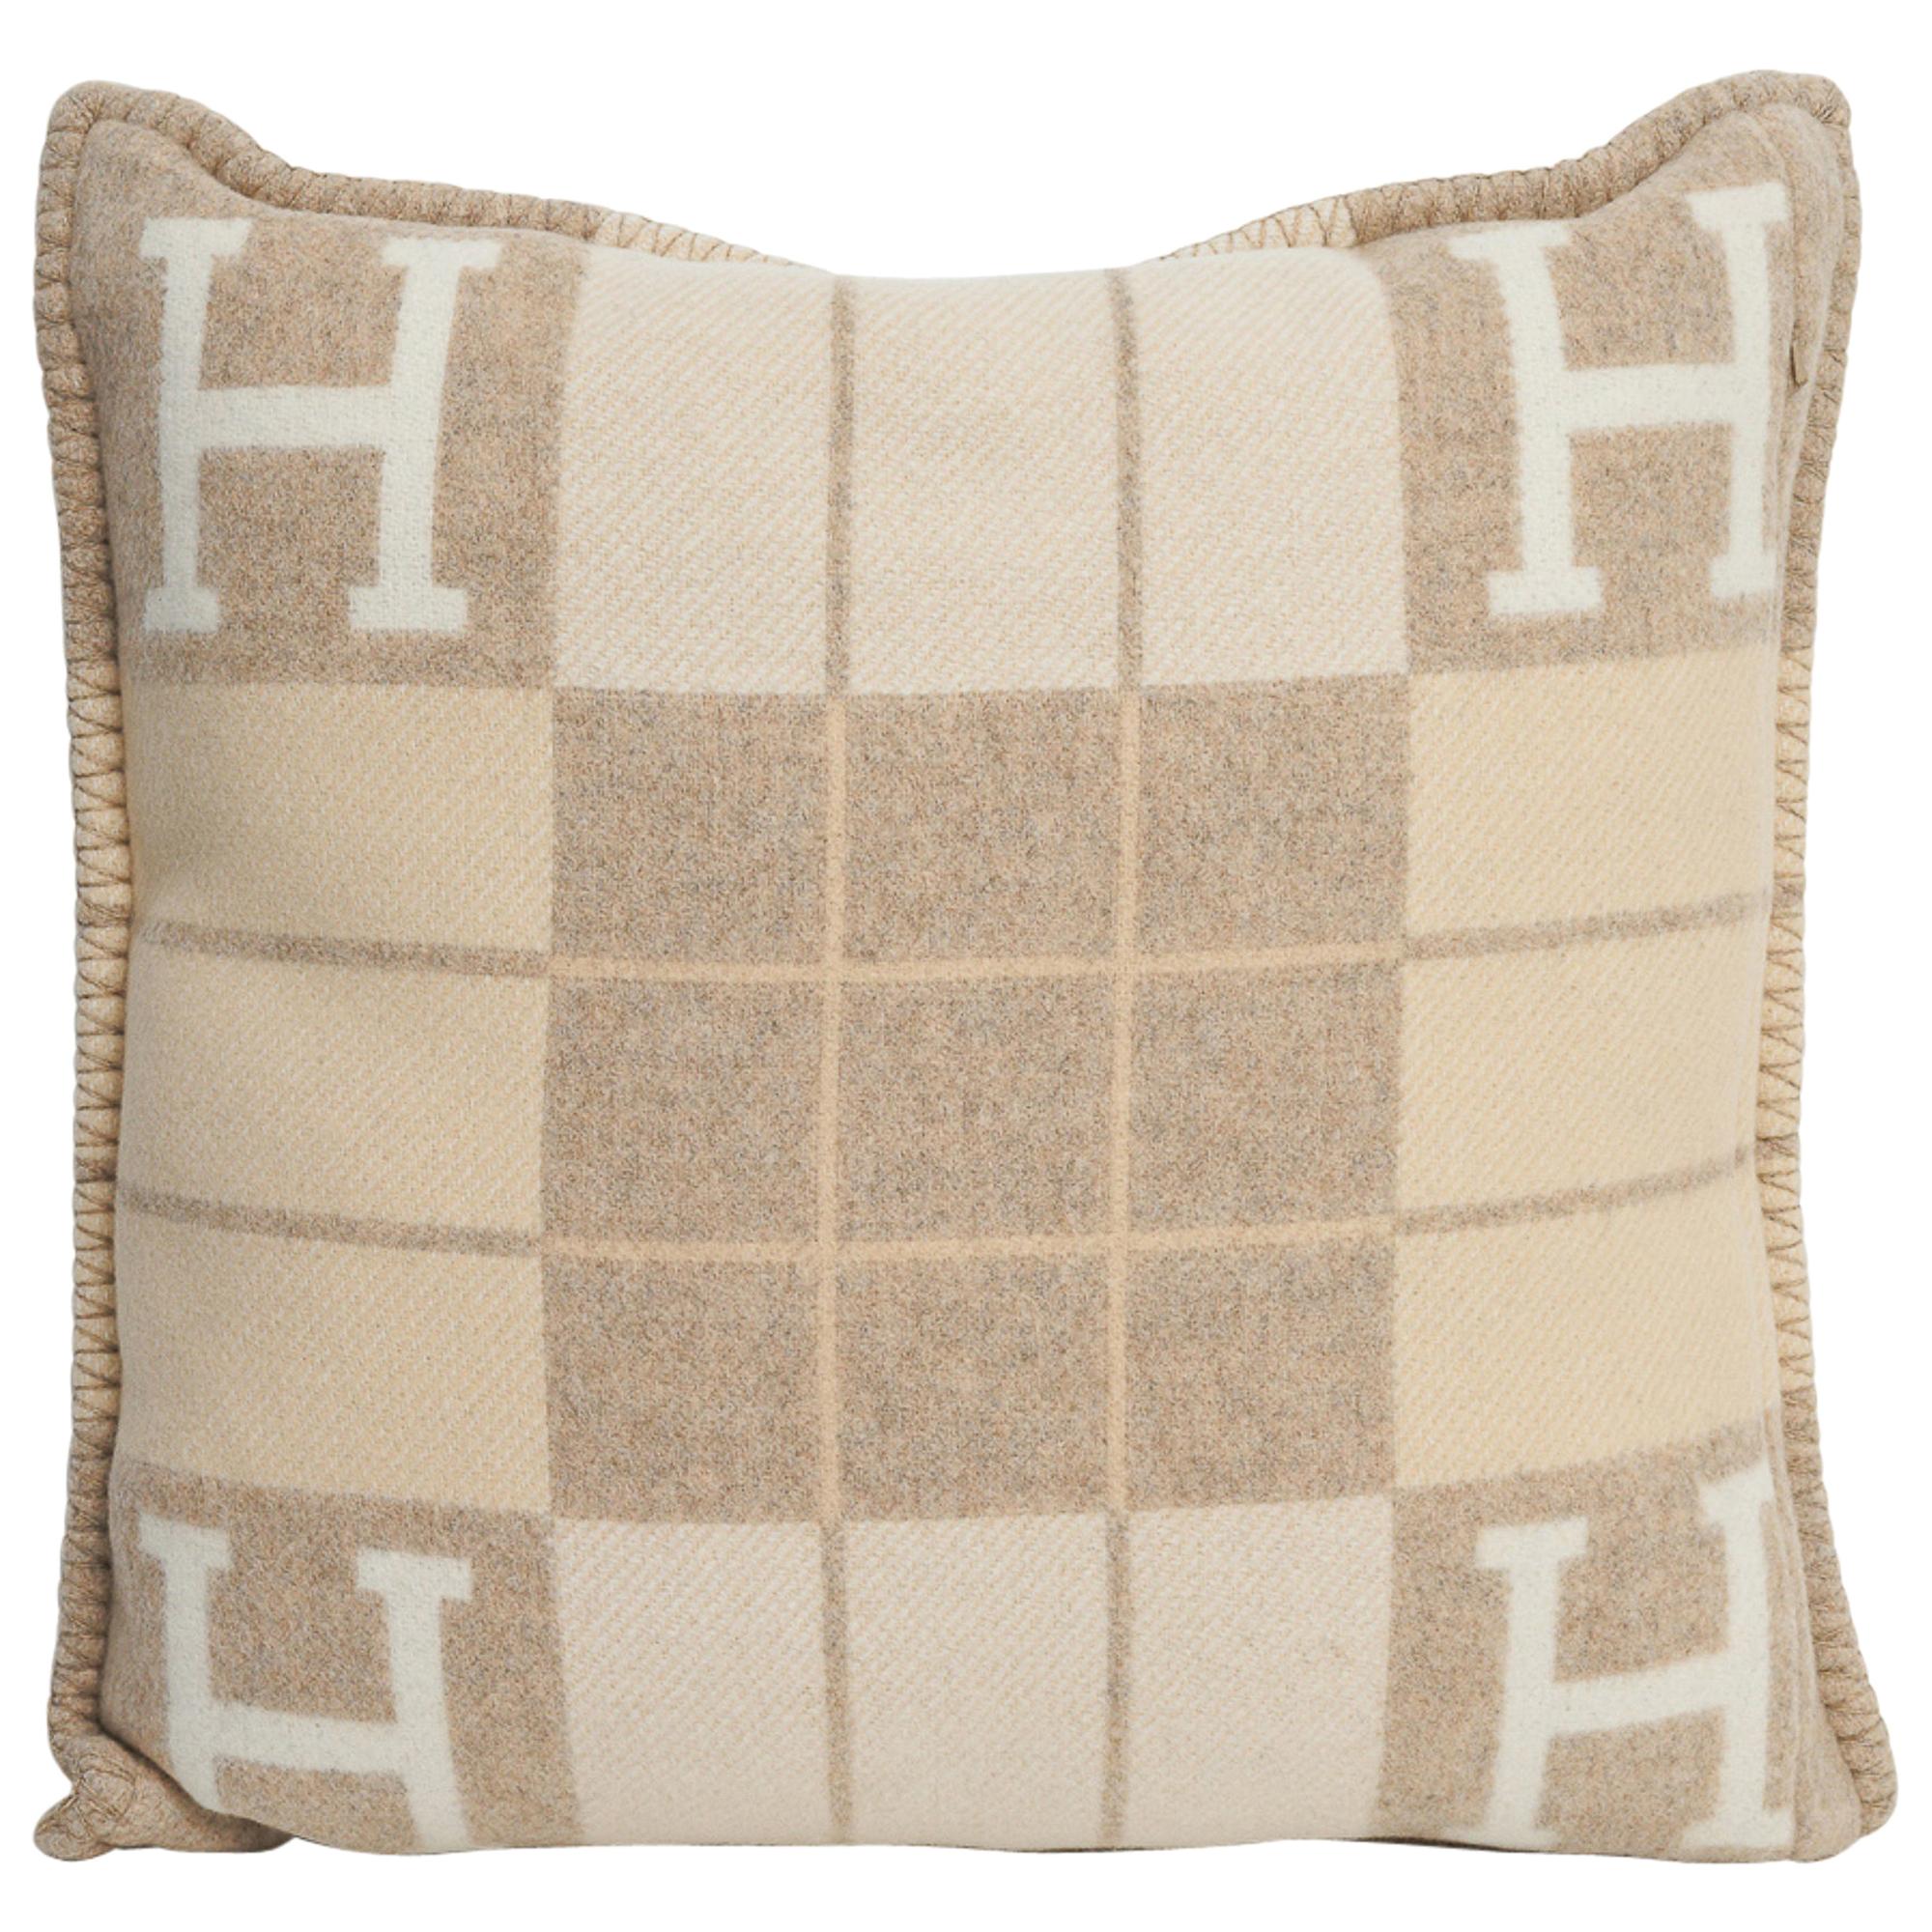 Hermes Avalon Pillow - 33 For Sale on 1stDibs | hermes pillow 